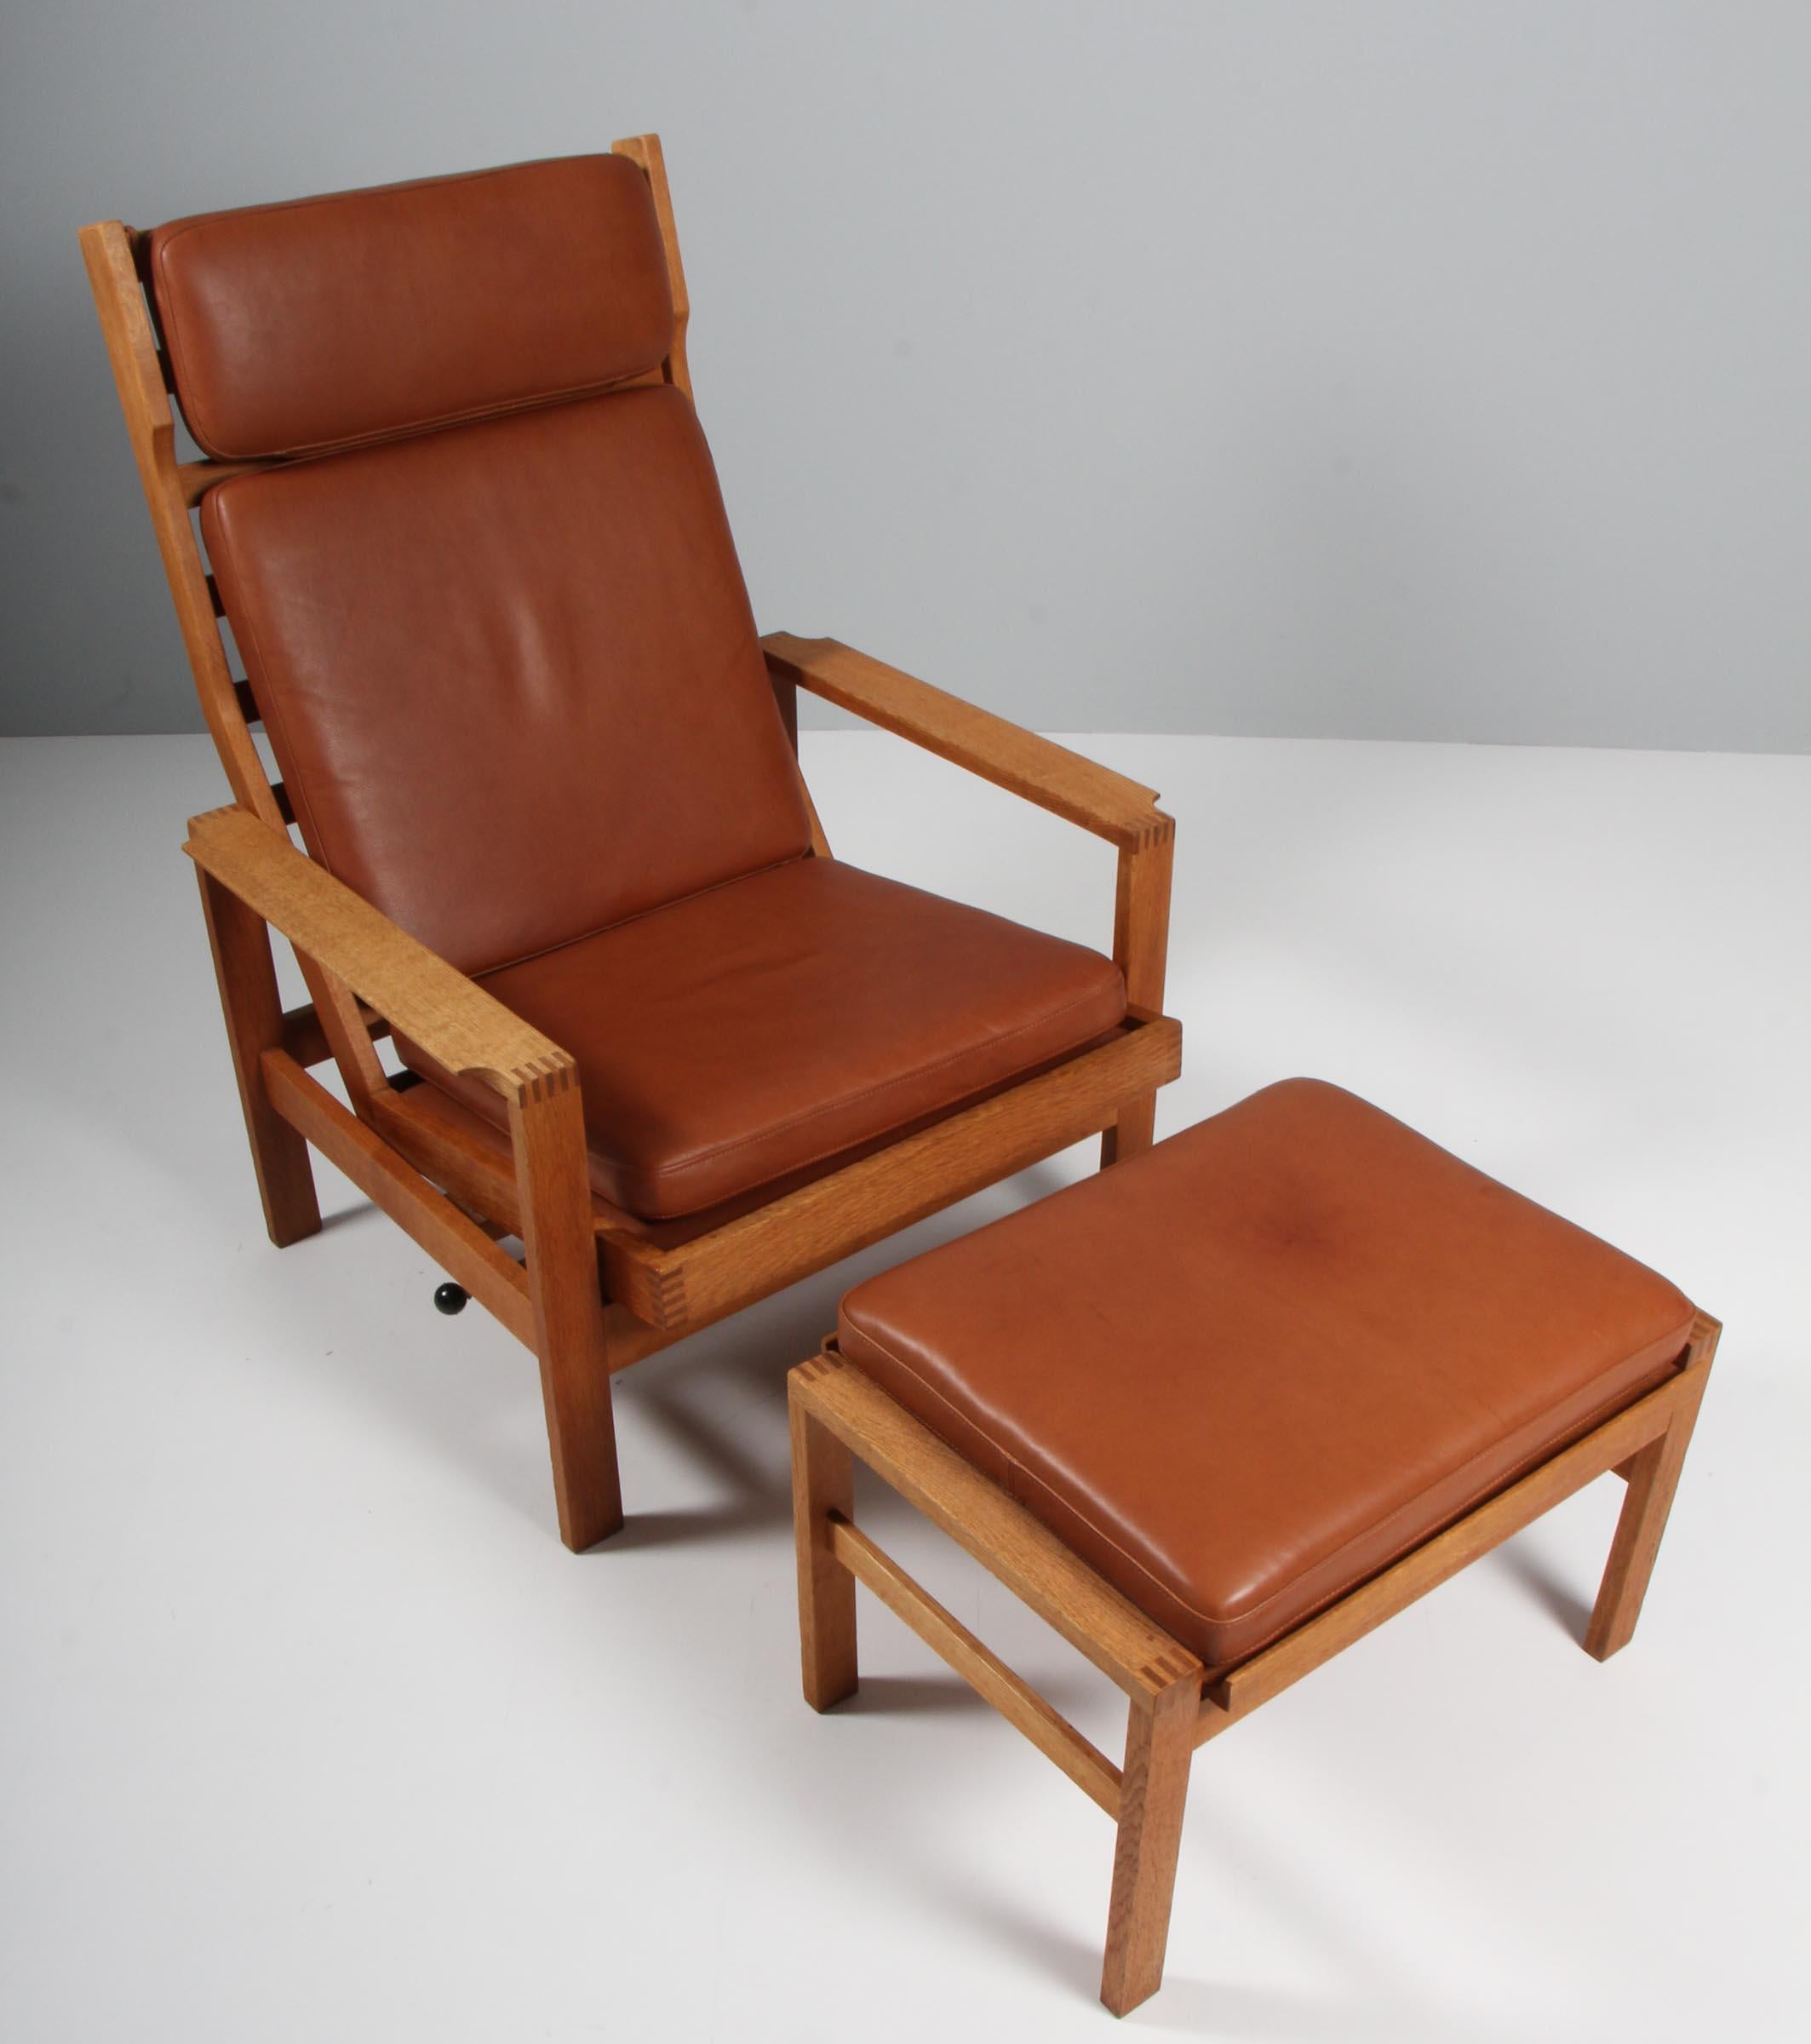 Chaise longue Madsen & Schubell avec ottoman. Tapissé de laine rouge.

Cadre en teck.

Fabriqué par Madsen & Schubell.